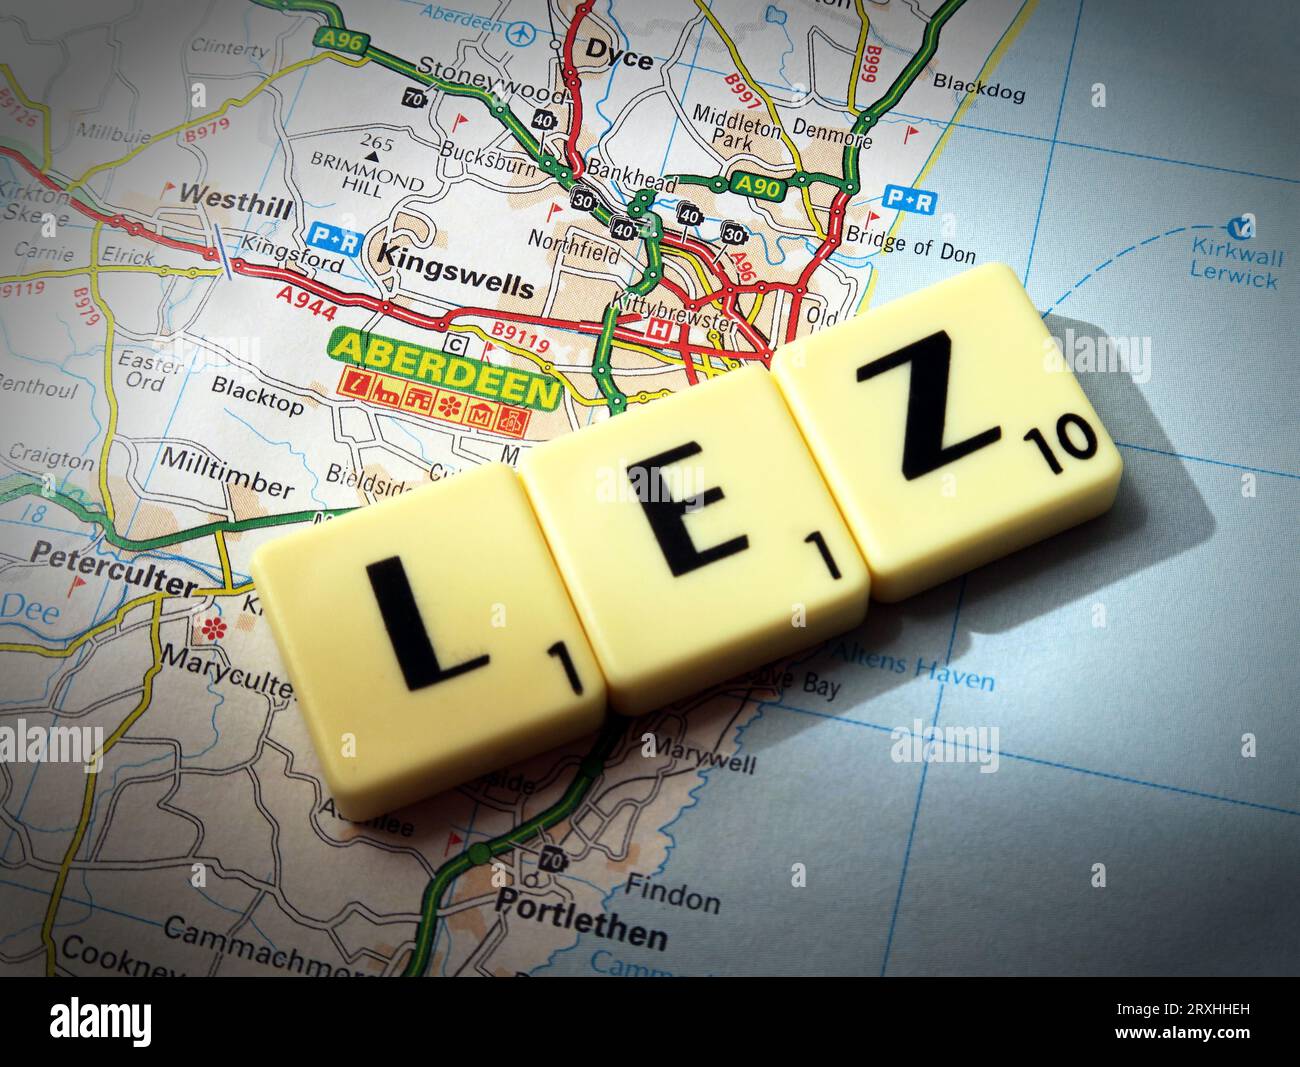 Aberdeen LEZ Low Emission zone - en mots, lettres Scrabble sur une carte - AB11 6LX Banque D'Images